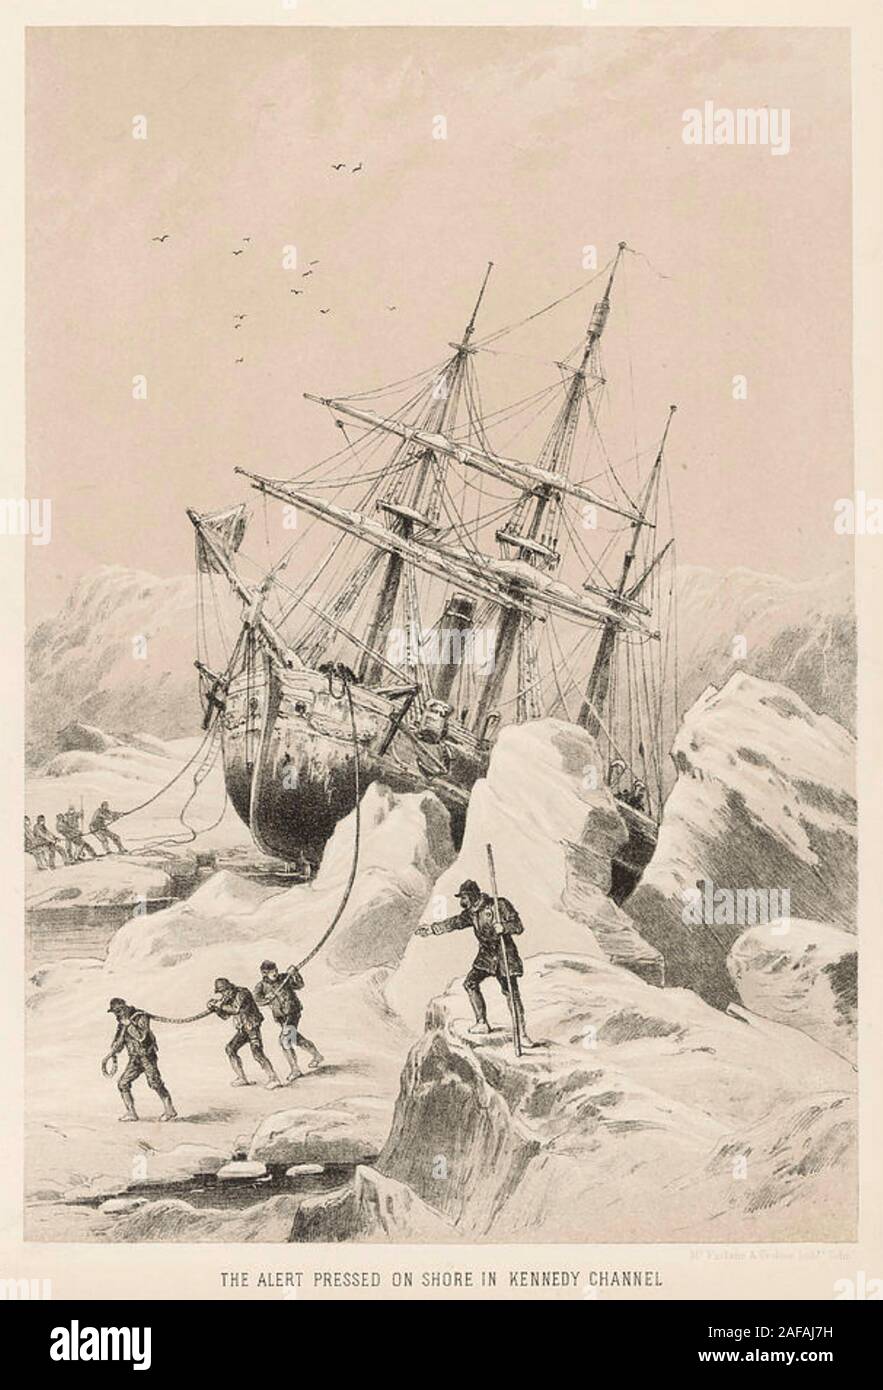 BRITISH ARCTIC EXPEDITION 1875-1876 unter der Leitung von George Nares, HMS Alert im Packeis eingeschlossen Stockfoto